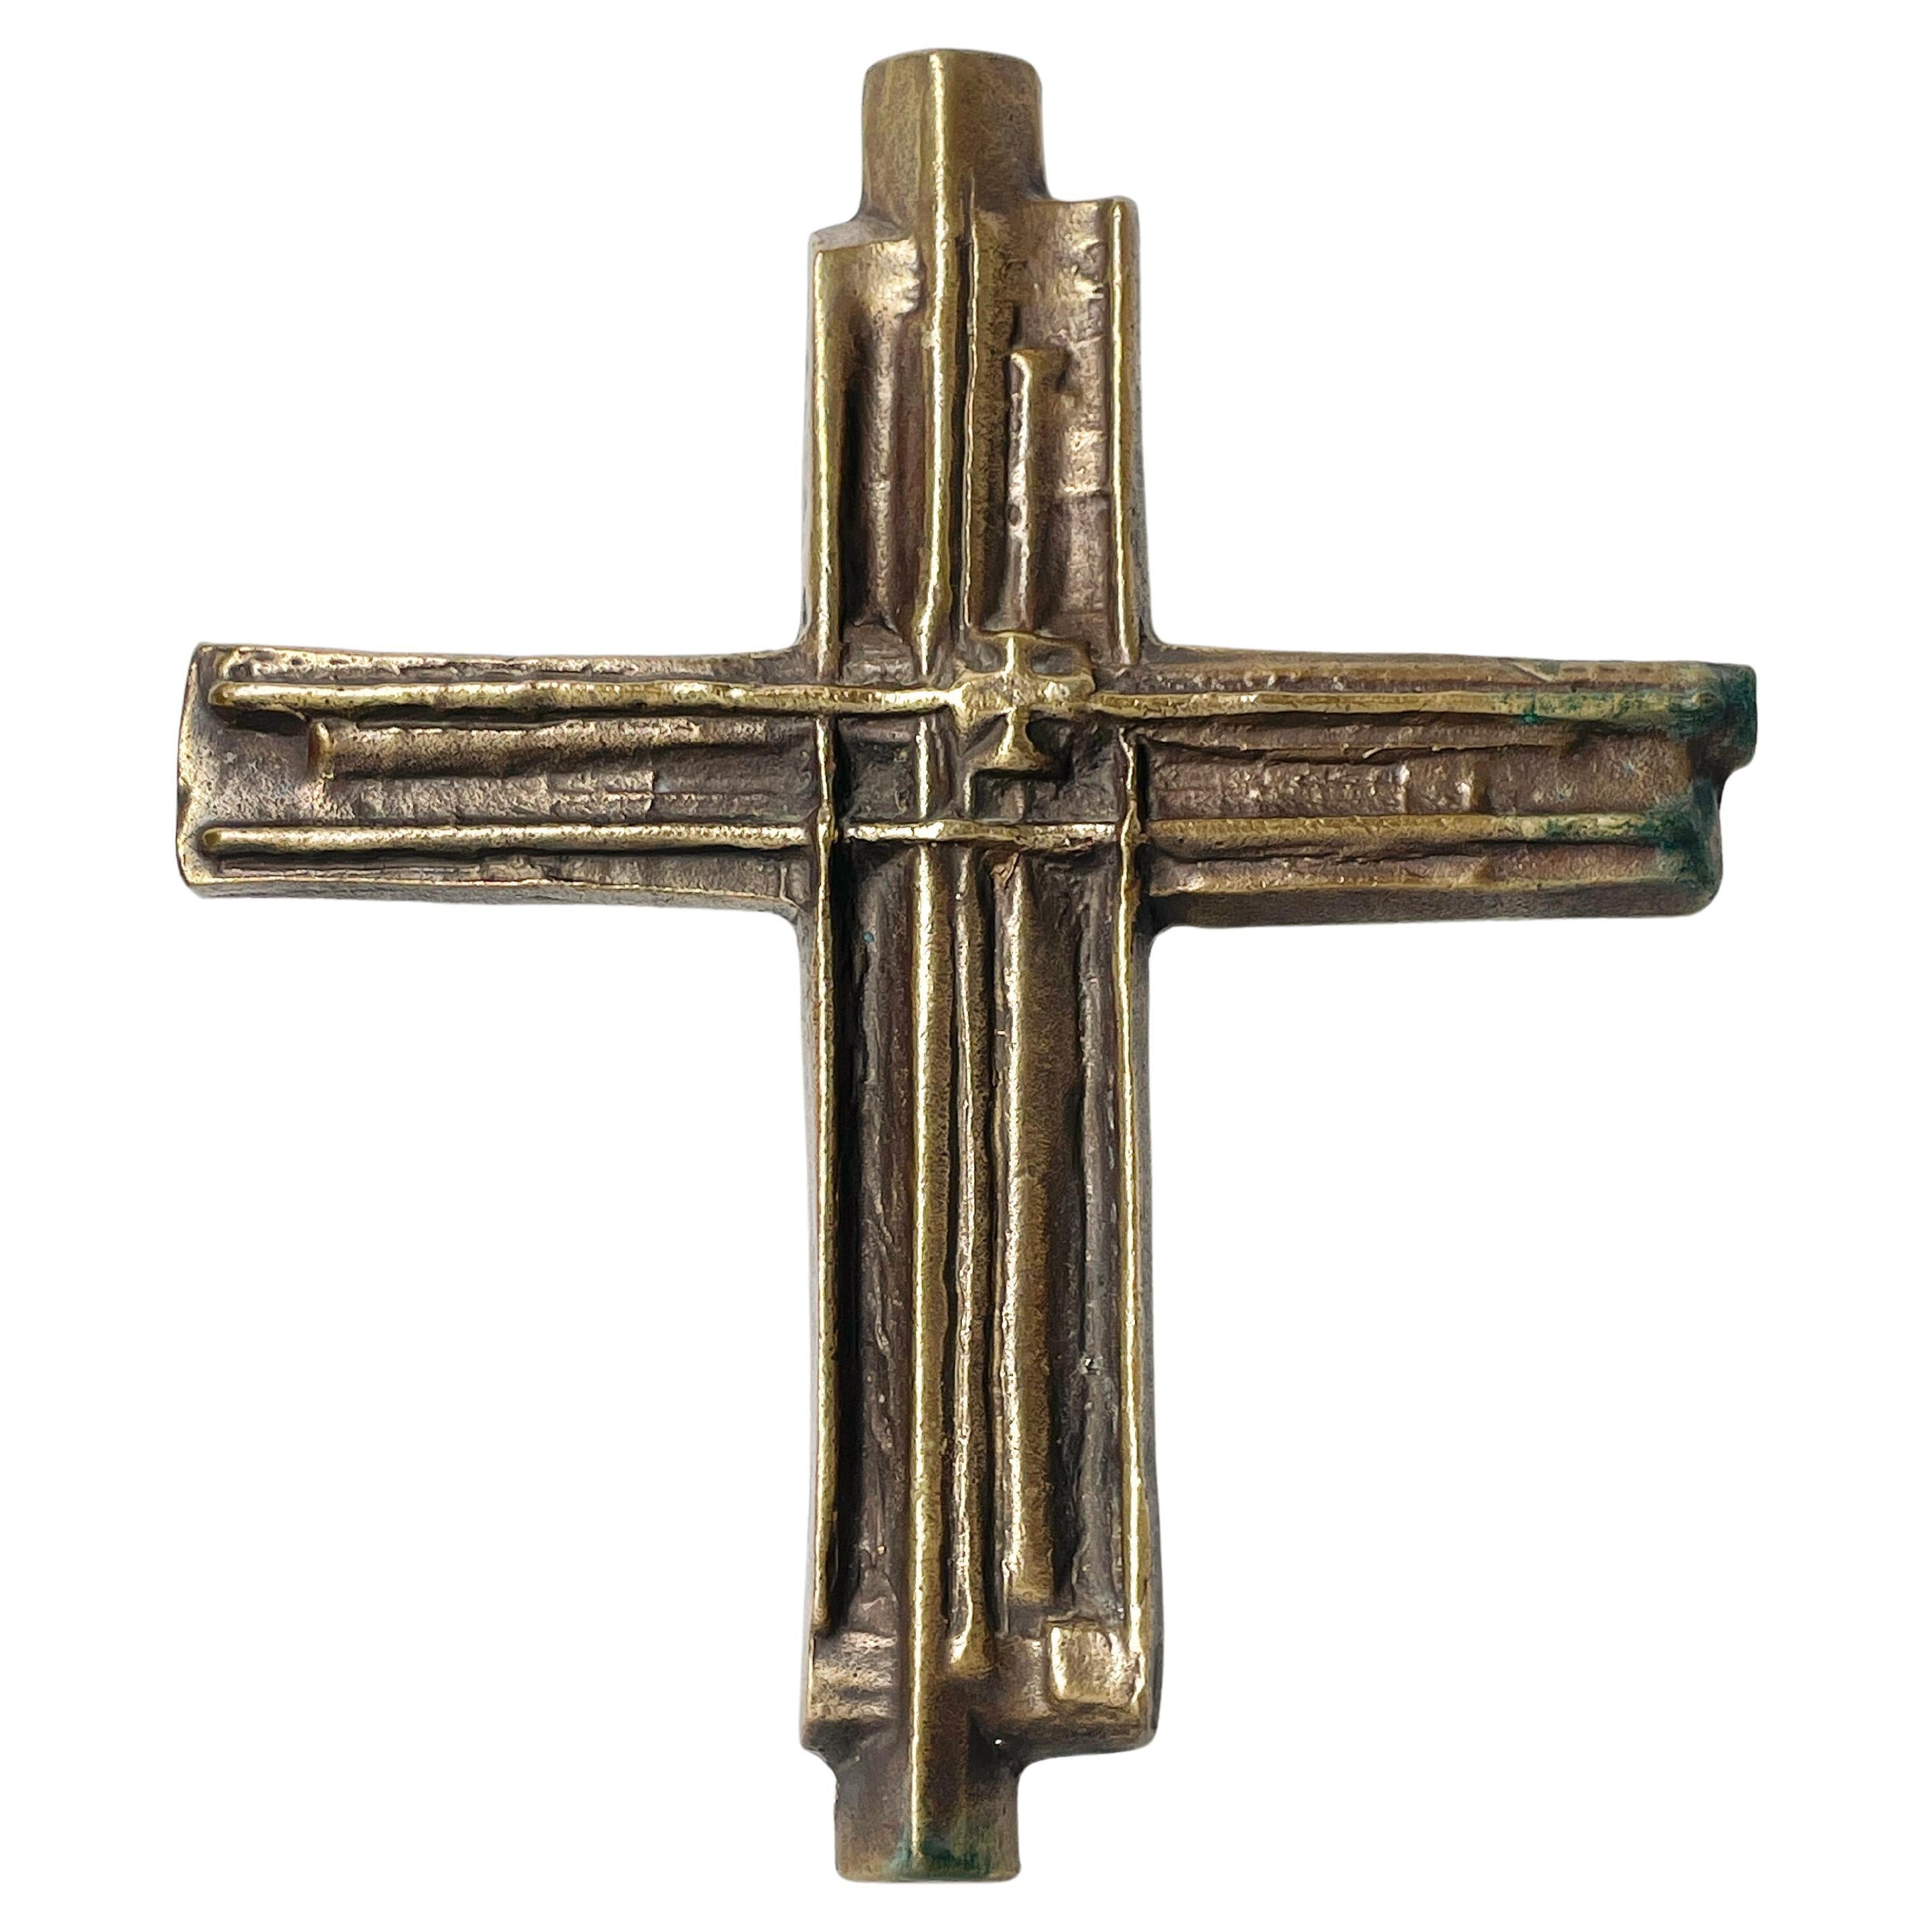 Brutalist Solid Brass Crucifix